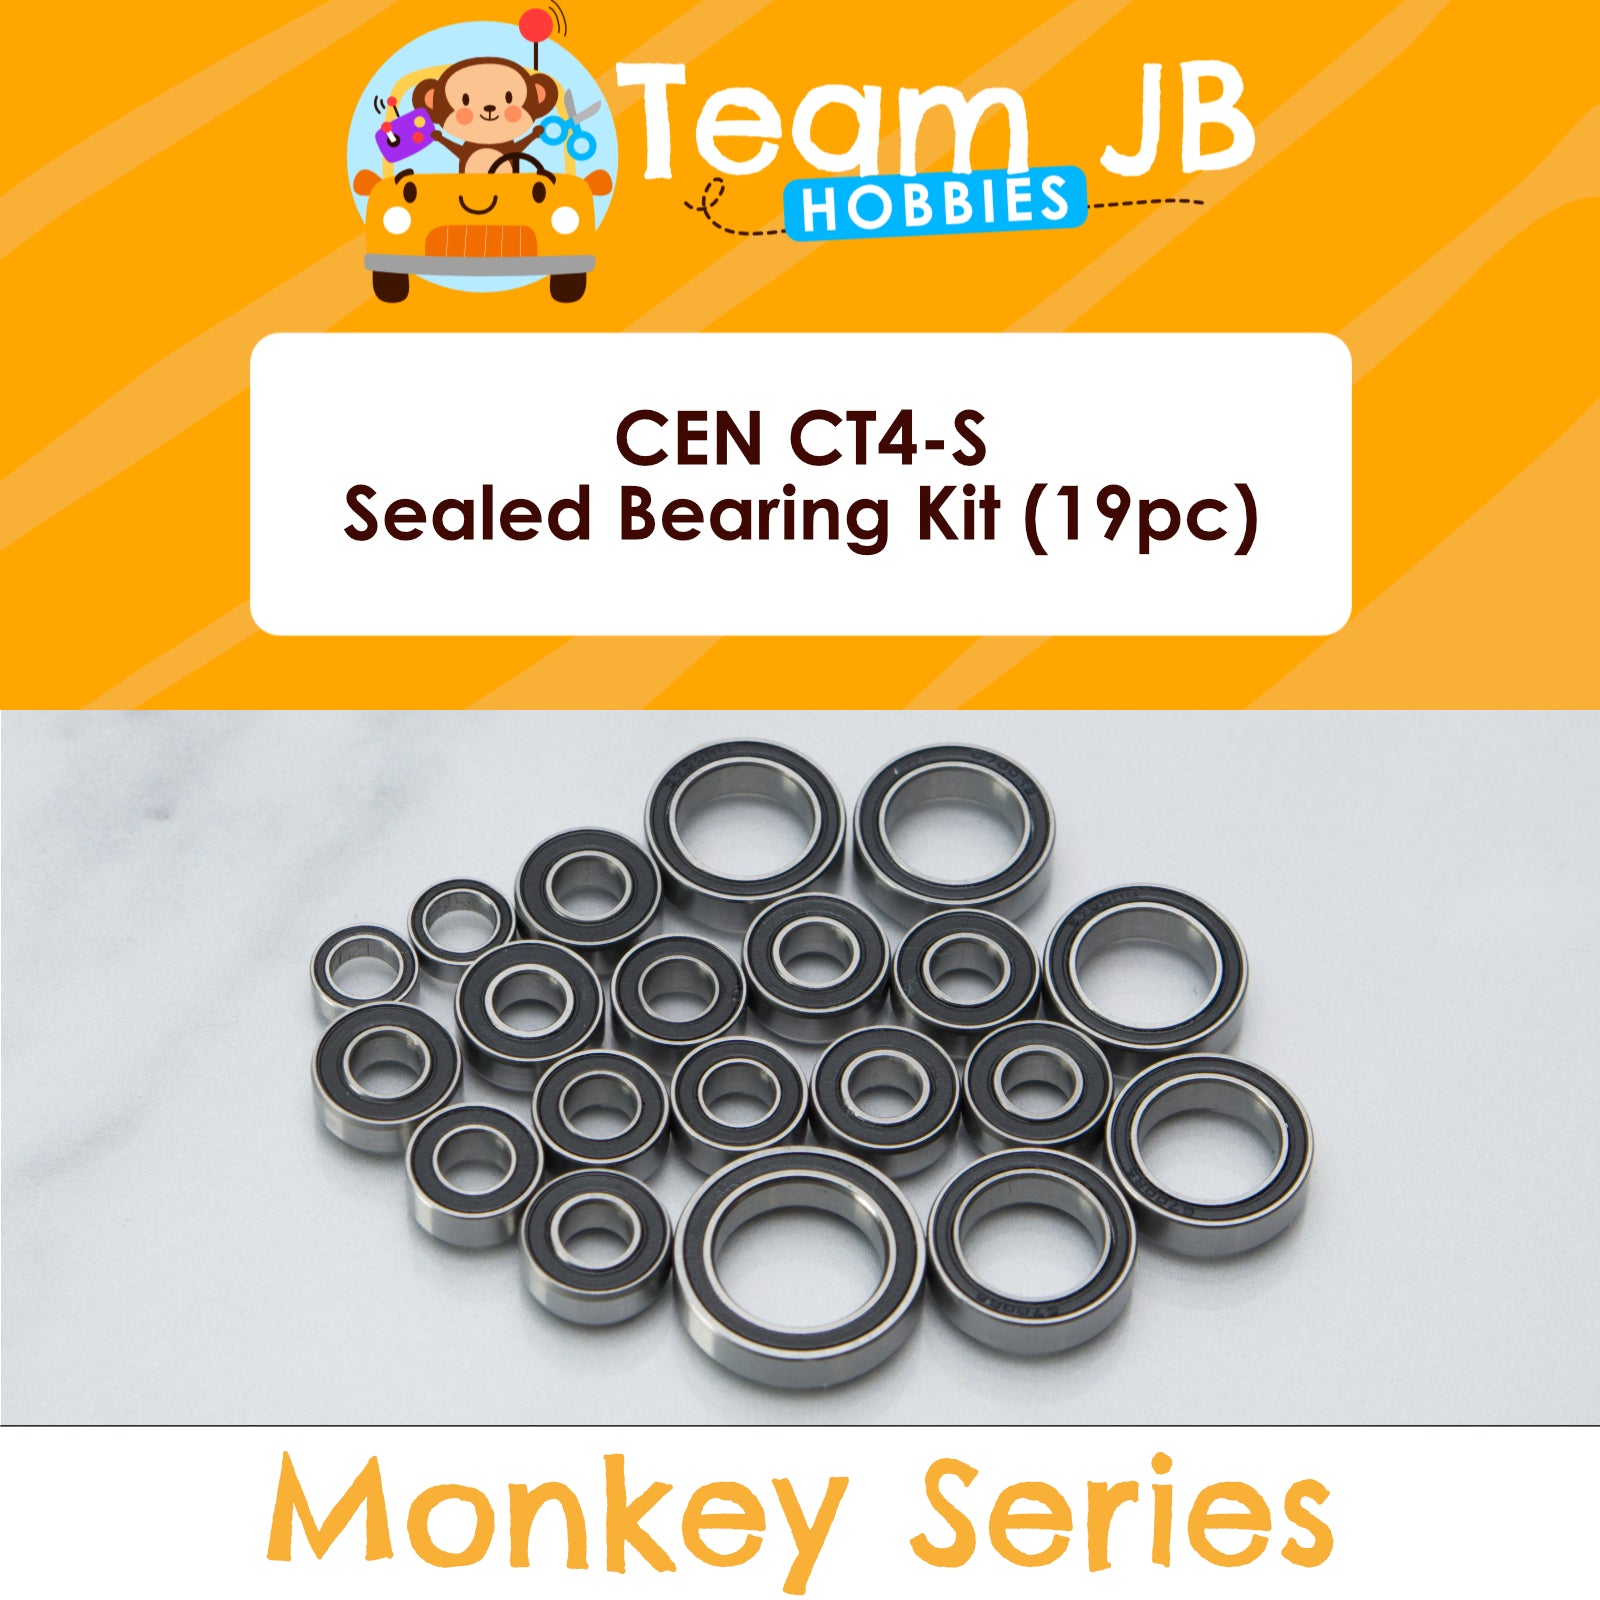 CEN CT4-S - Sealed Bearing Kit